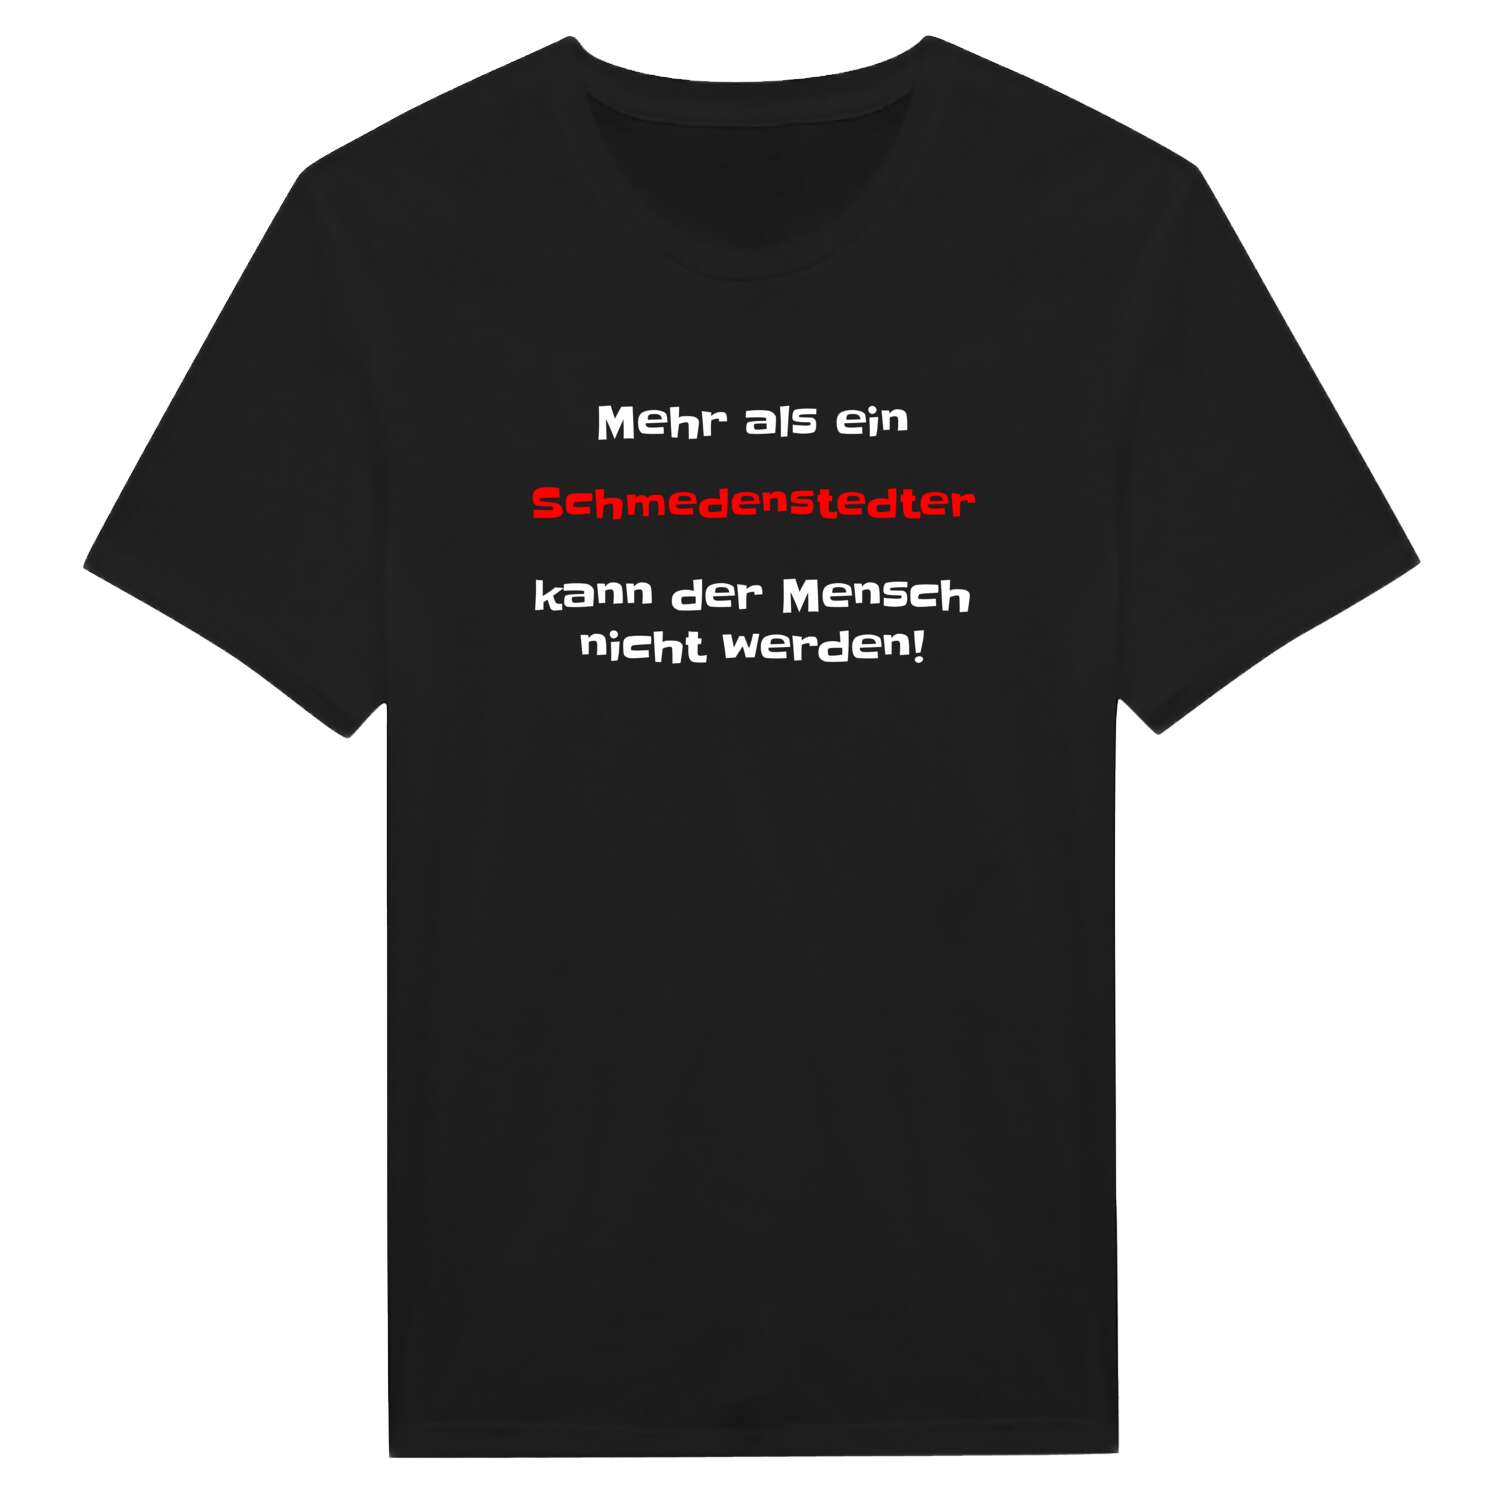 Schmedenstedt T-Shirt »Mehr als ein«